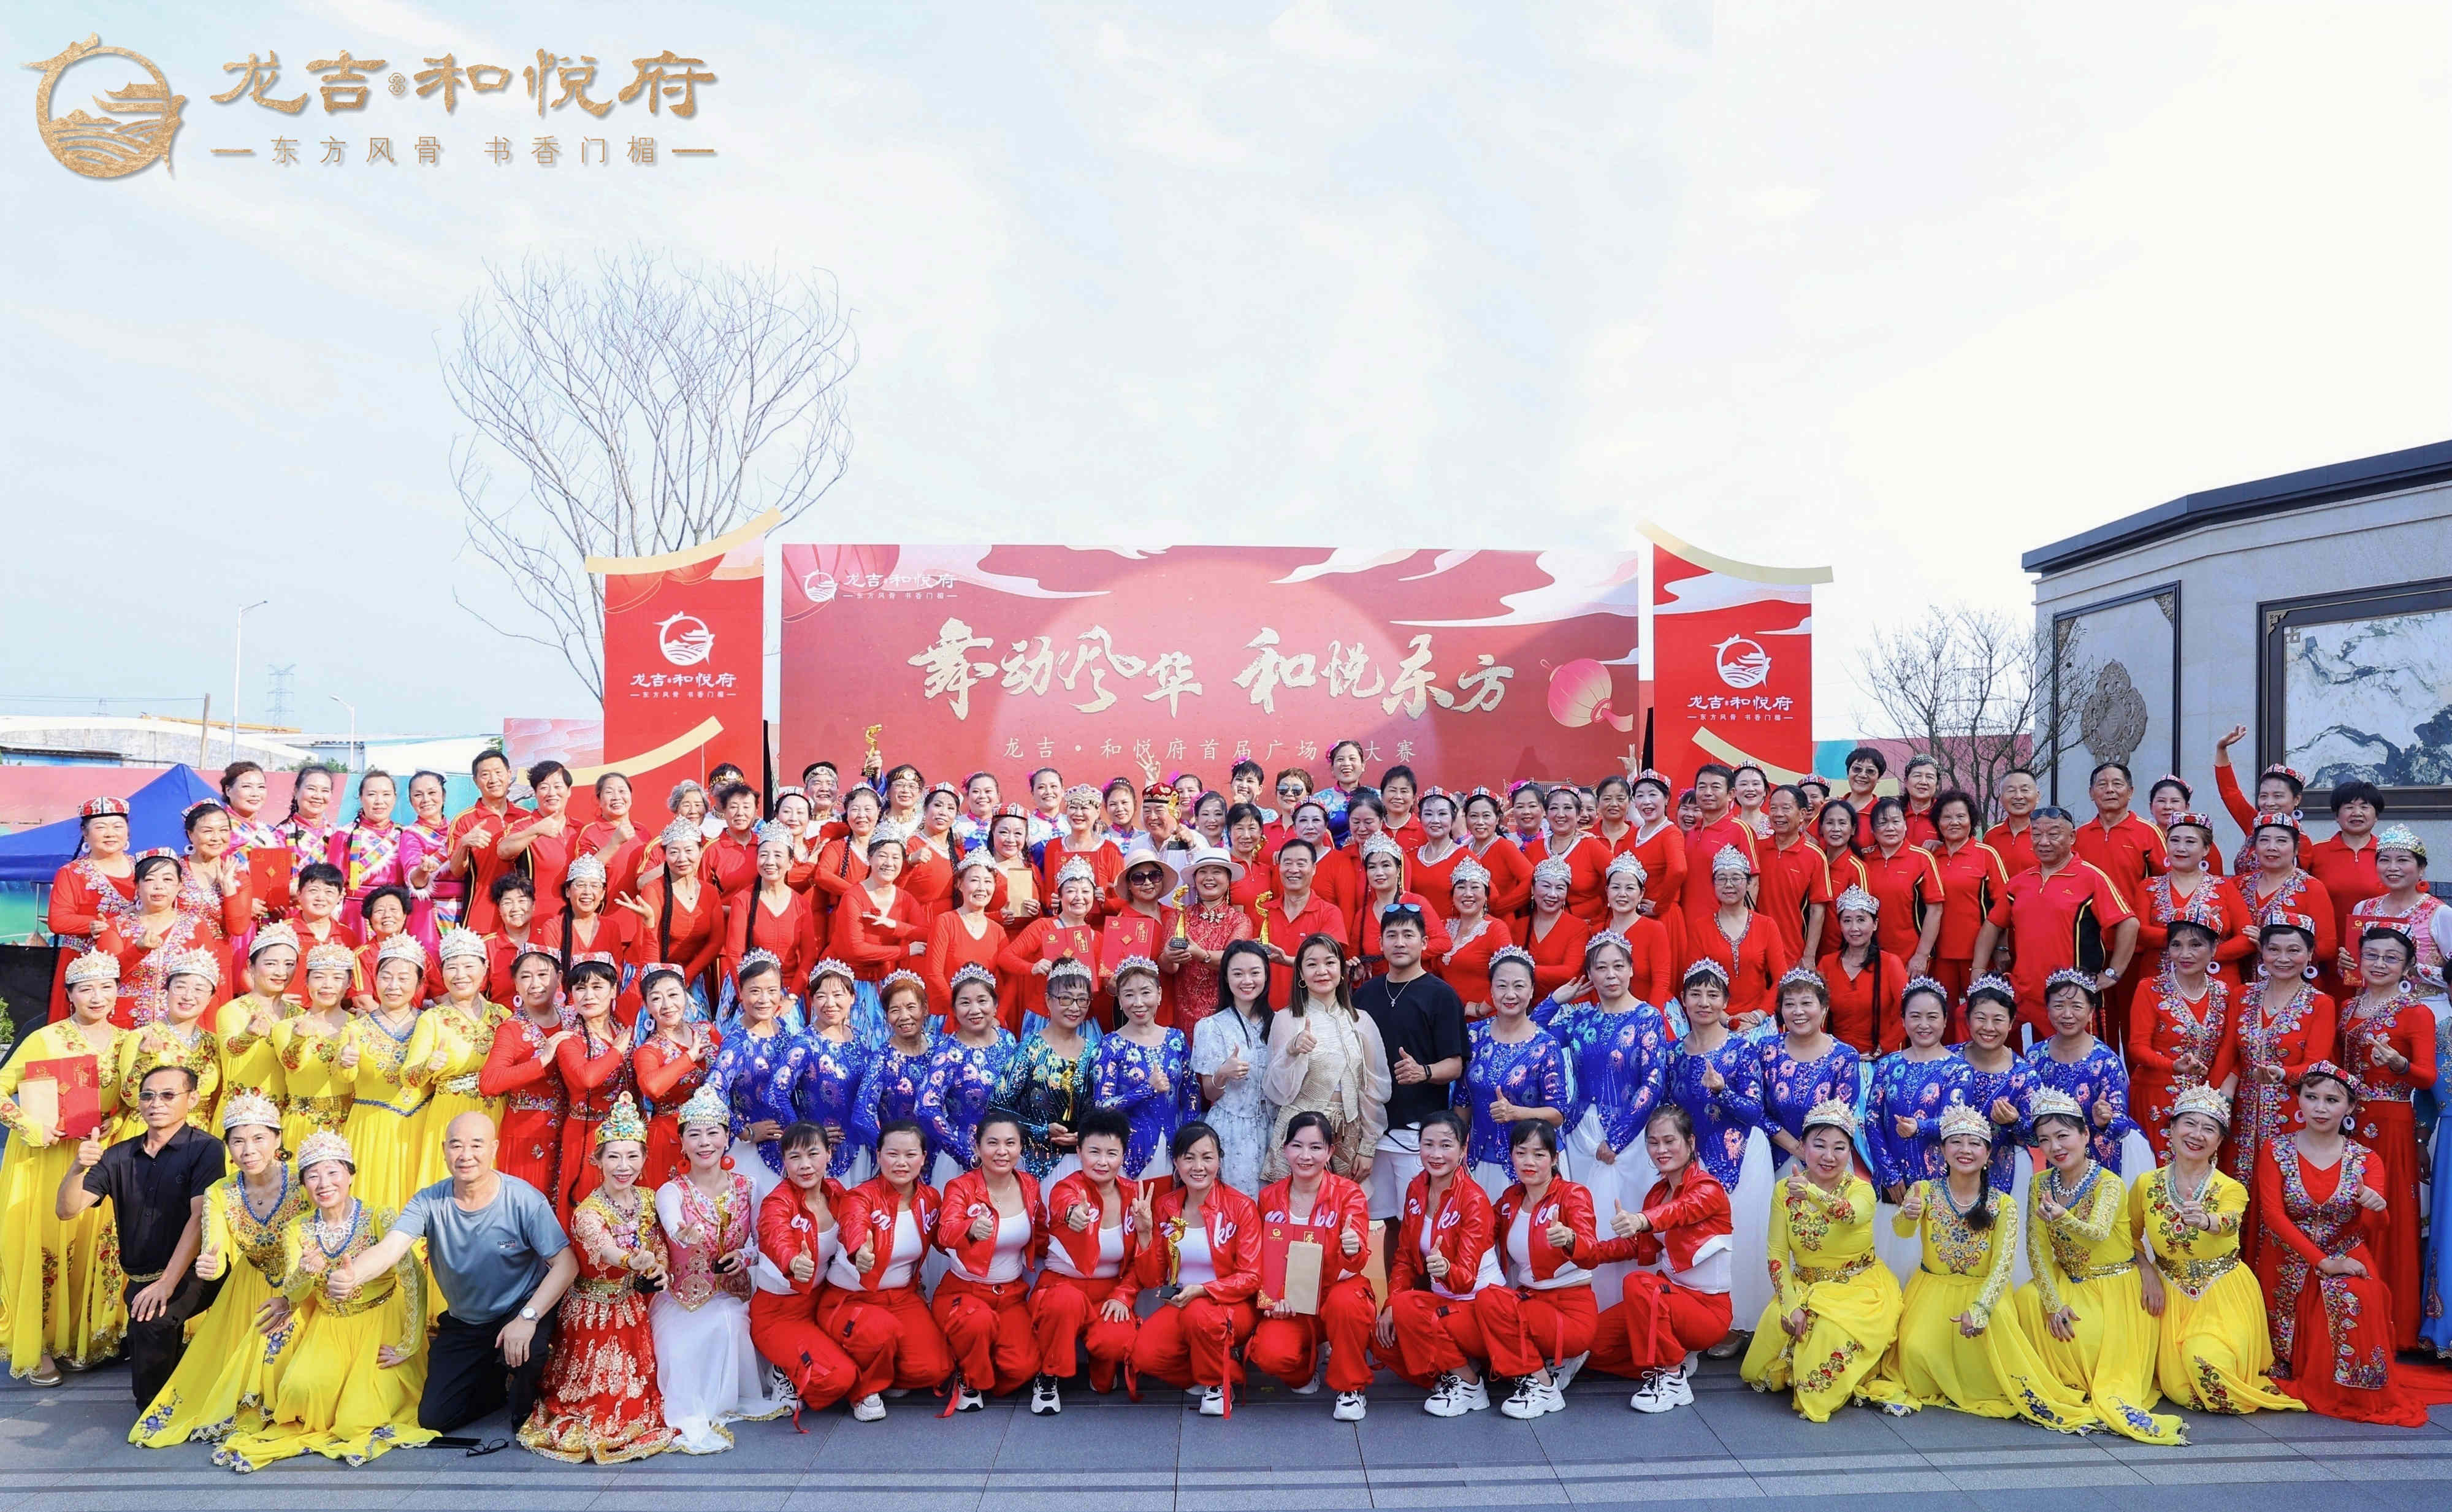 推广全民健身活动，倡导健康生活；龙吉·和悦府首届广场舞大赛隆重举行